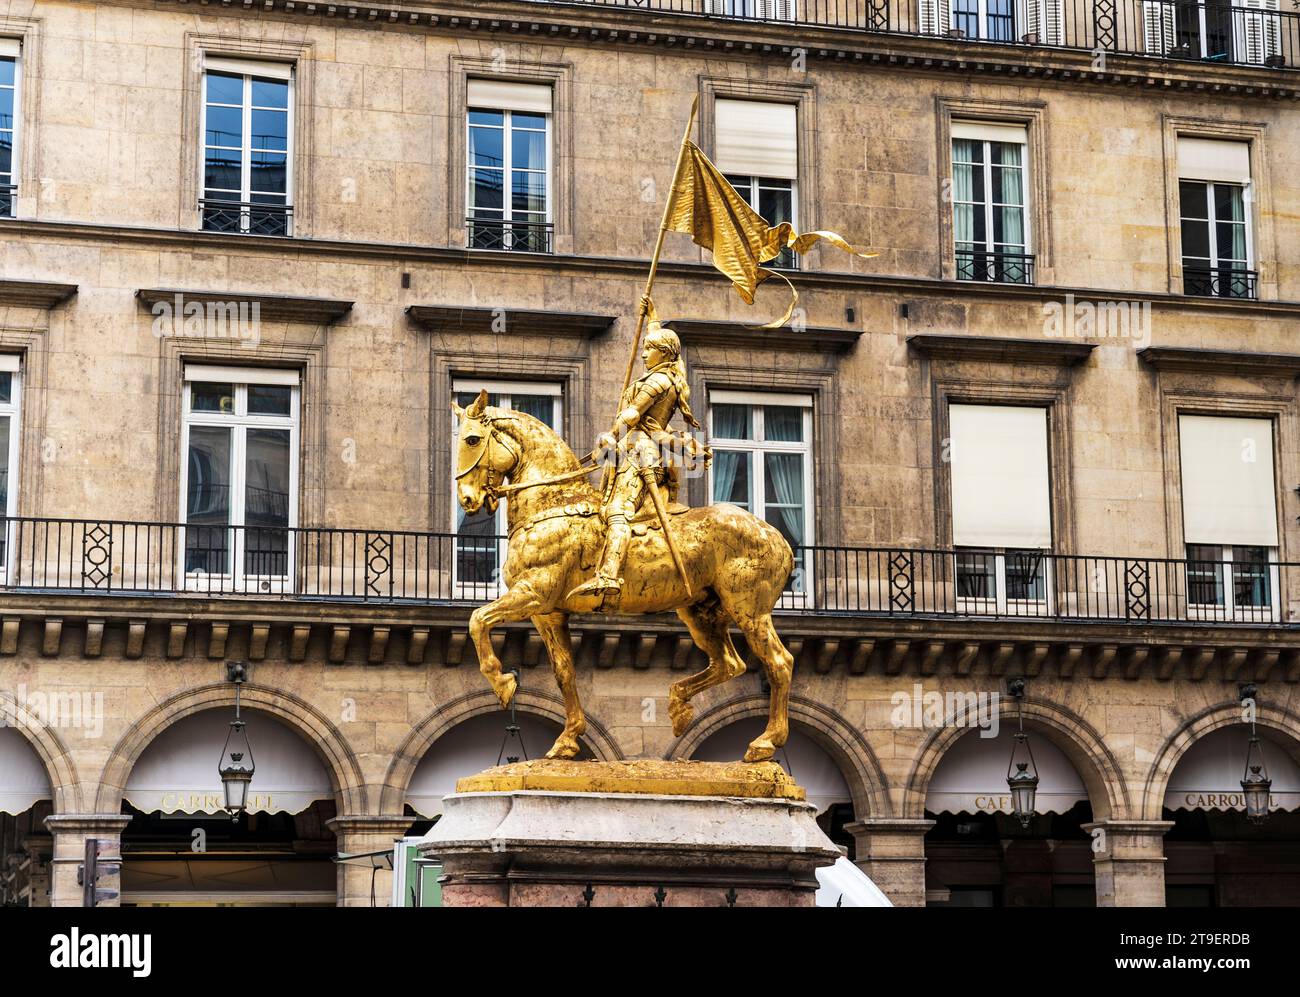 Statua in bronzo dorato di Giovanna d'Arco di Emmanuel Frémiet, eretta alla fine del XIX secolo, in Place des Pyramides, i arrondissement, Parigi Foto Stock